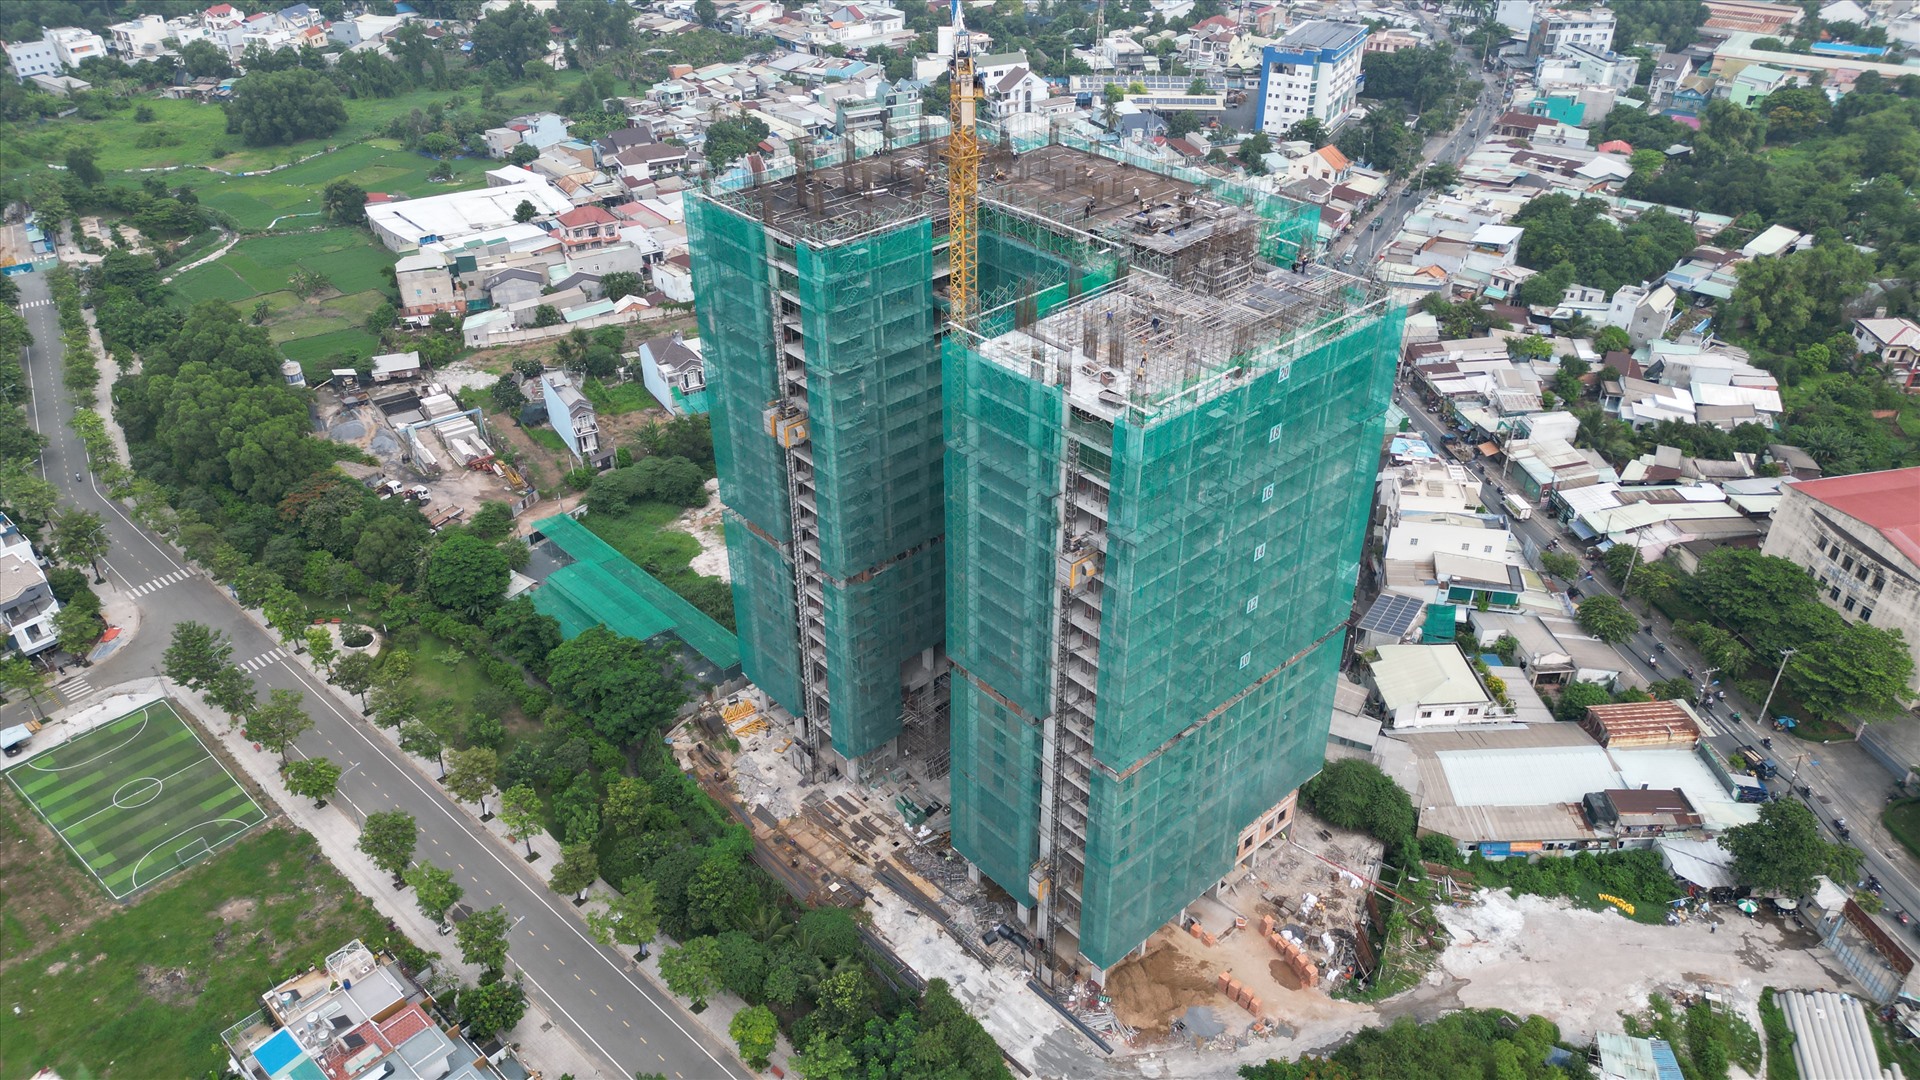 Dự án gồm 2 block cao 25 tầng với 674 căn hộ, đang được ráo riết xây dựng. Hiện giá bán các sản phẩm tại đây dao động khoảng 37-45 triệu đồng/m2.